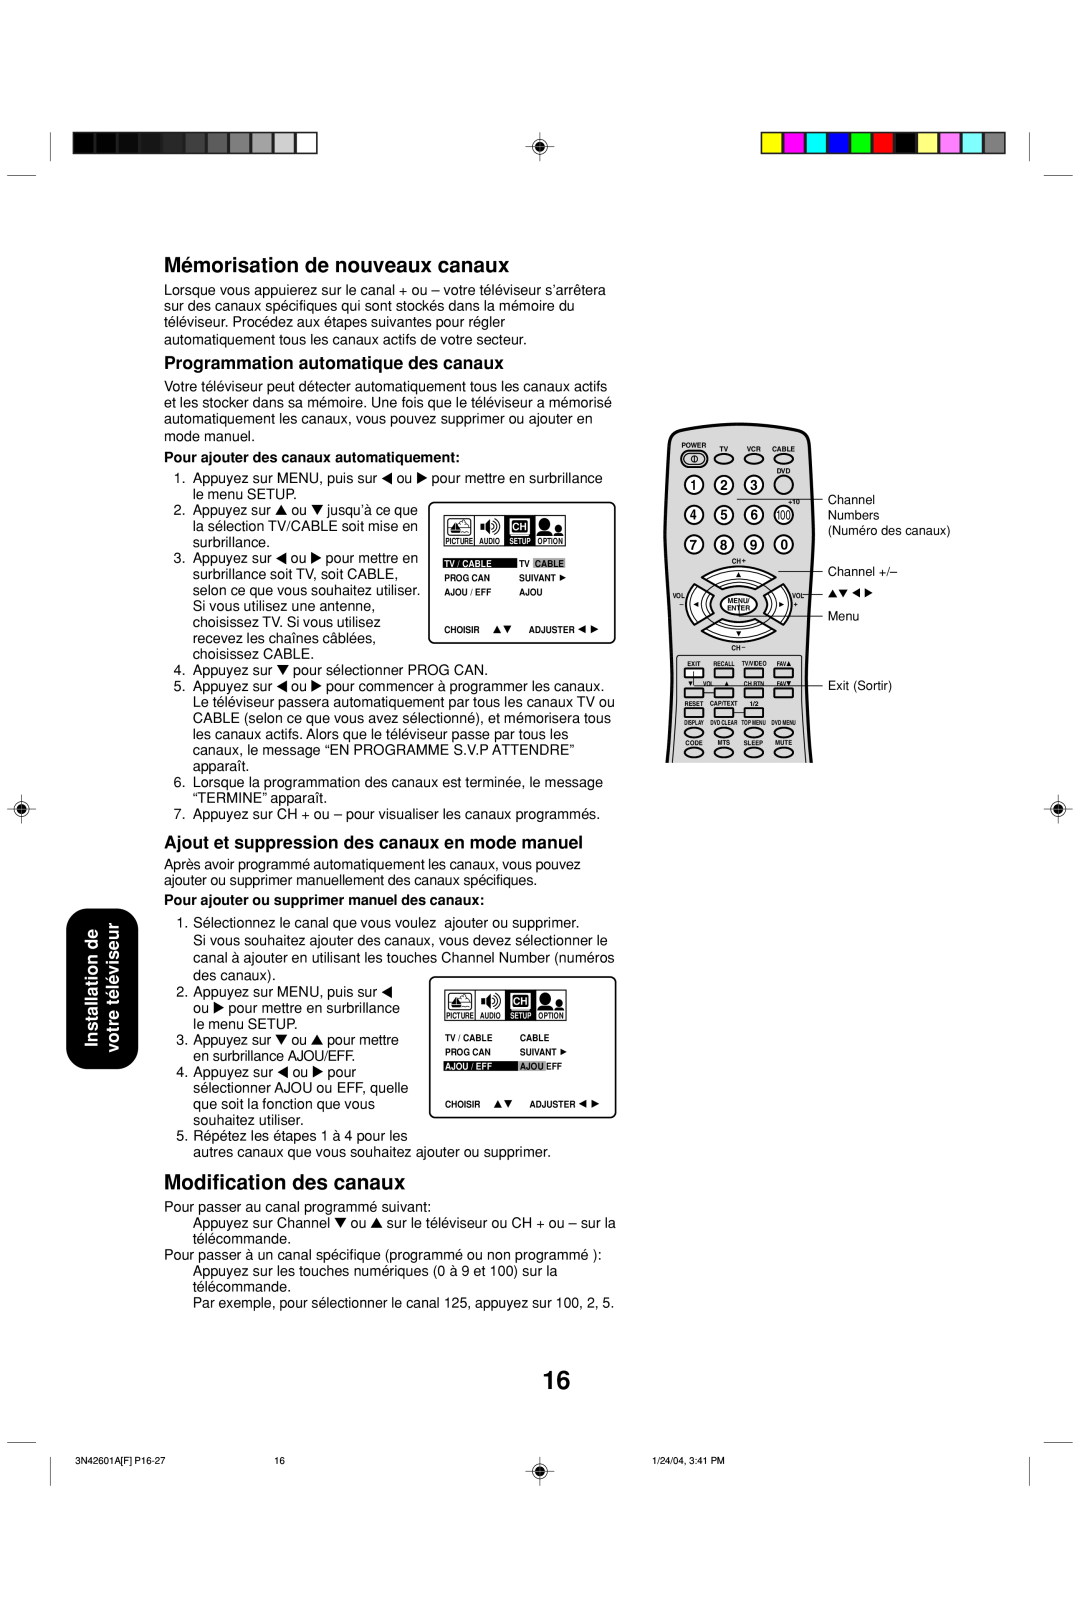 Toshiba 27A44 appendix Mémorisation de nouveaux canaux, Modification des canaux, Programmation automatique des canaux 